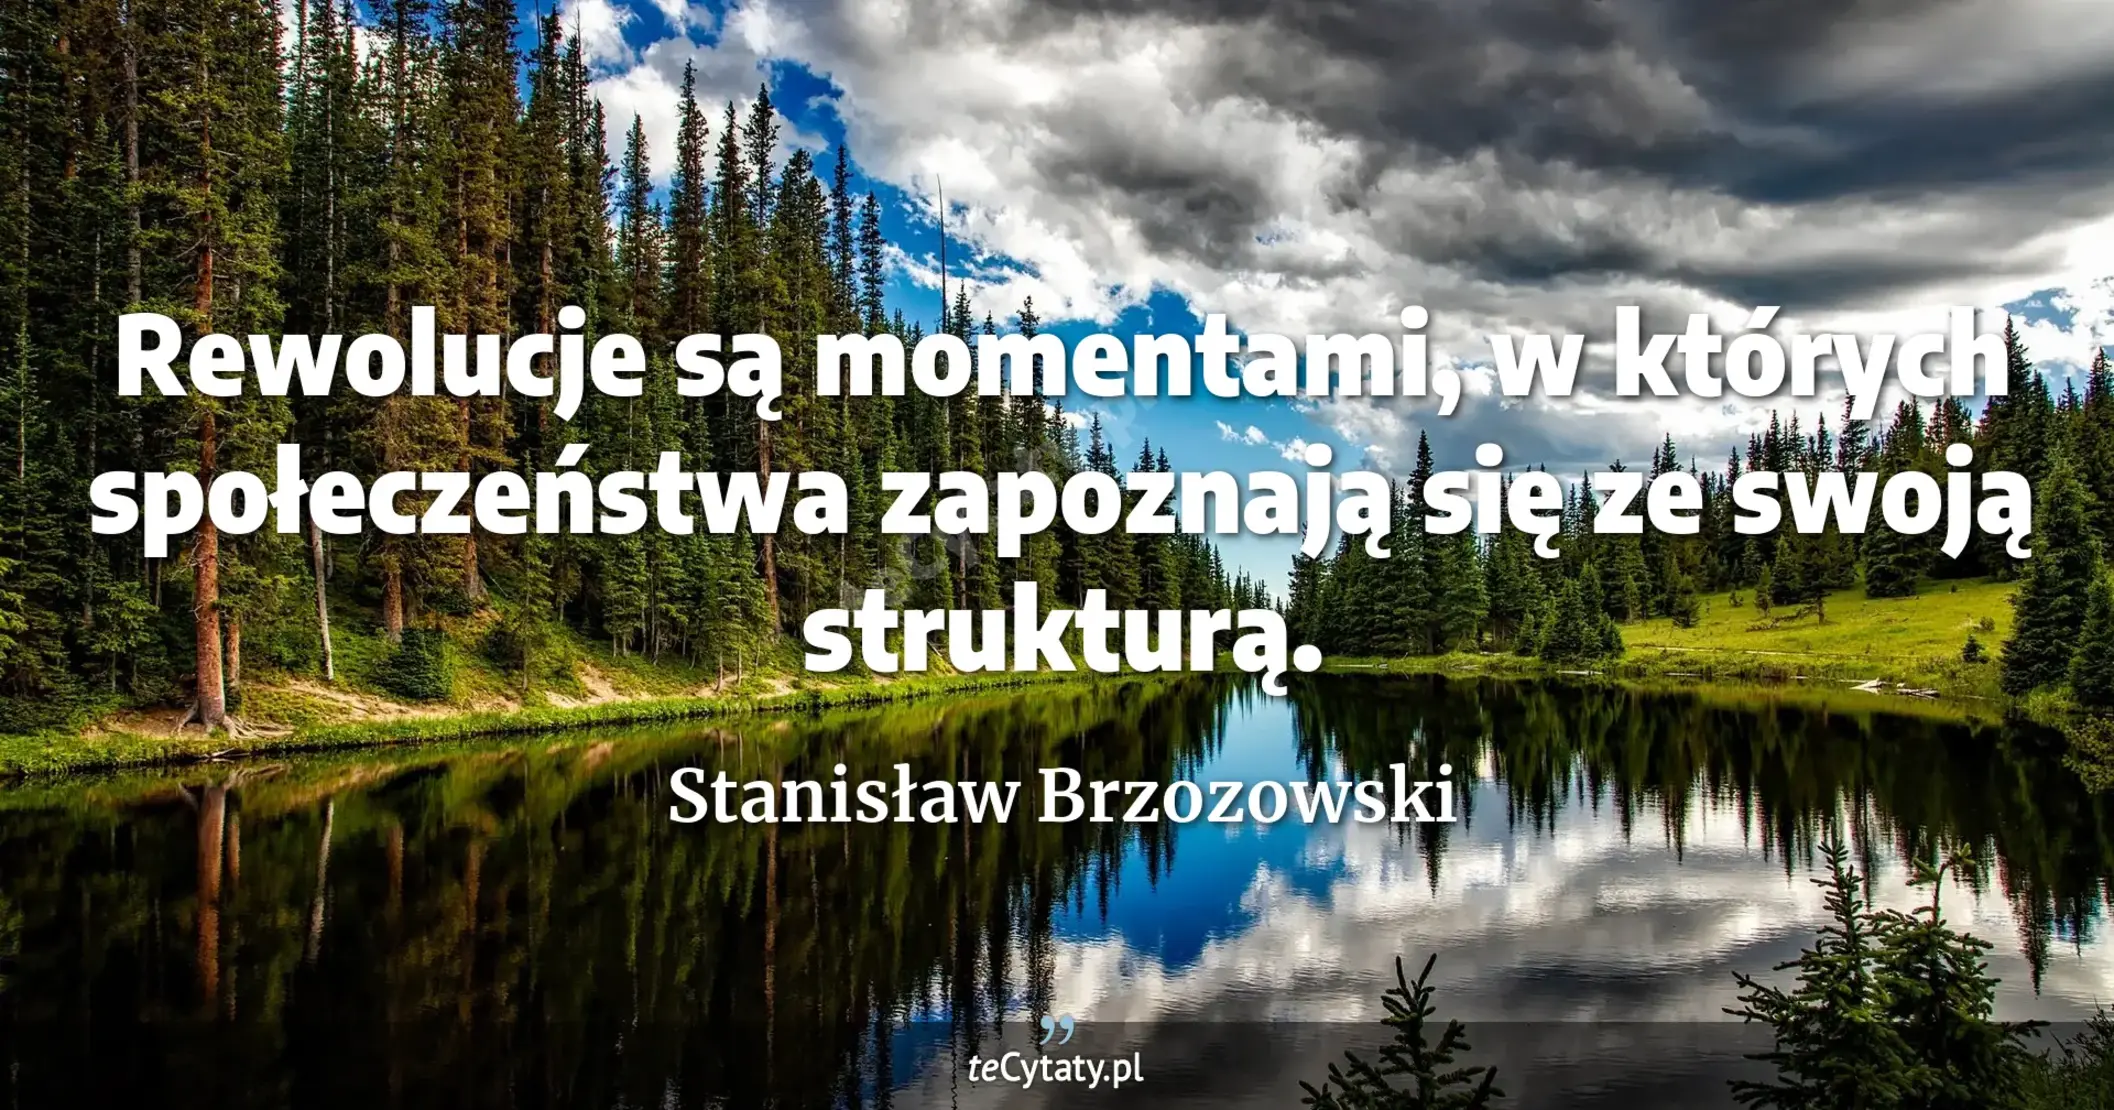 Rewolucje są momentami, w których społeczeństwa zapoznają się ze swoją strukturą. - Stanisław Brzozowski